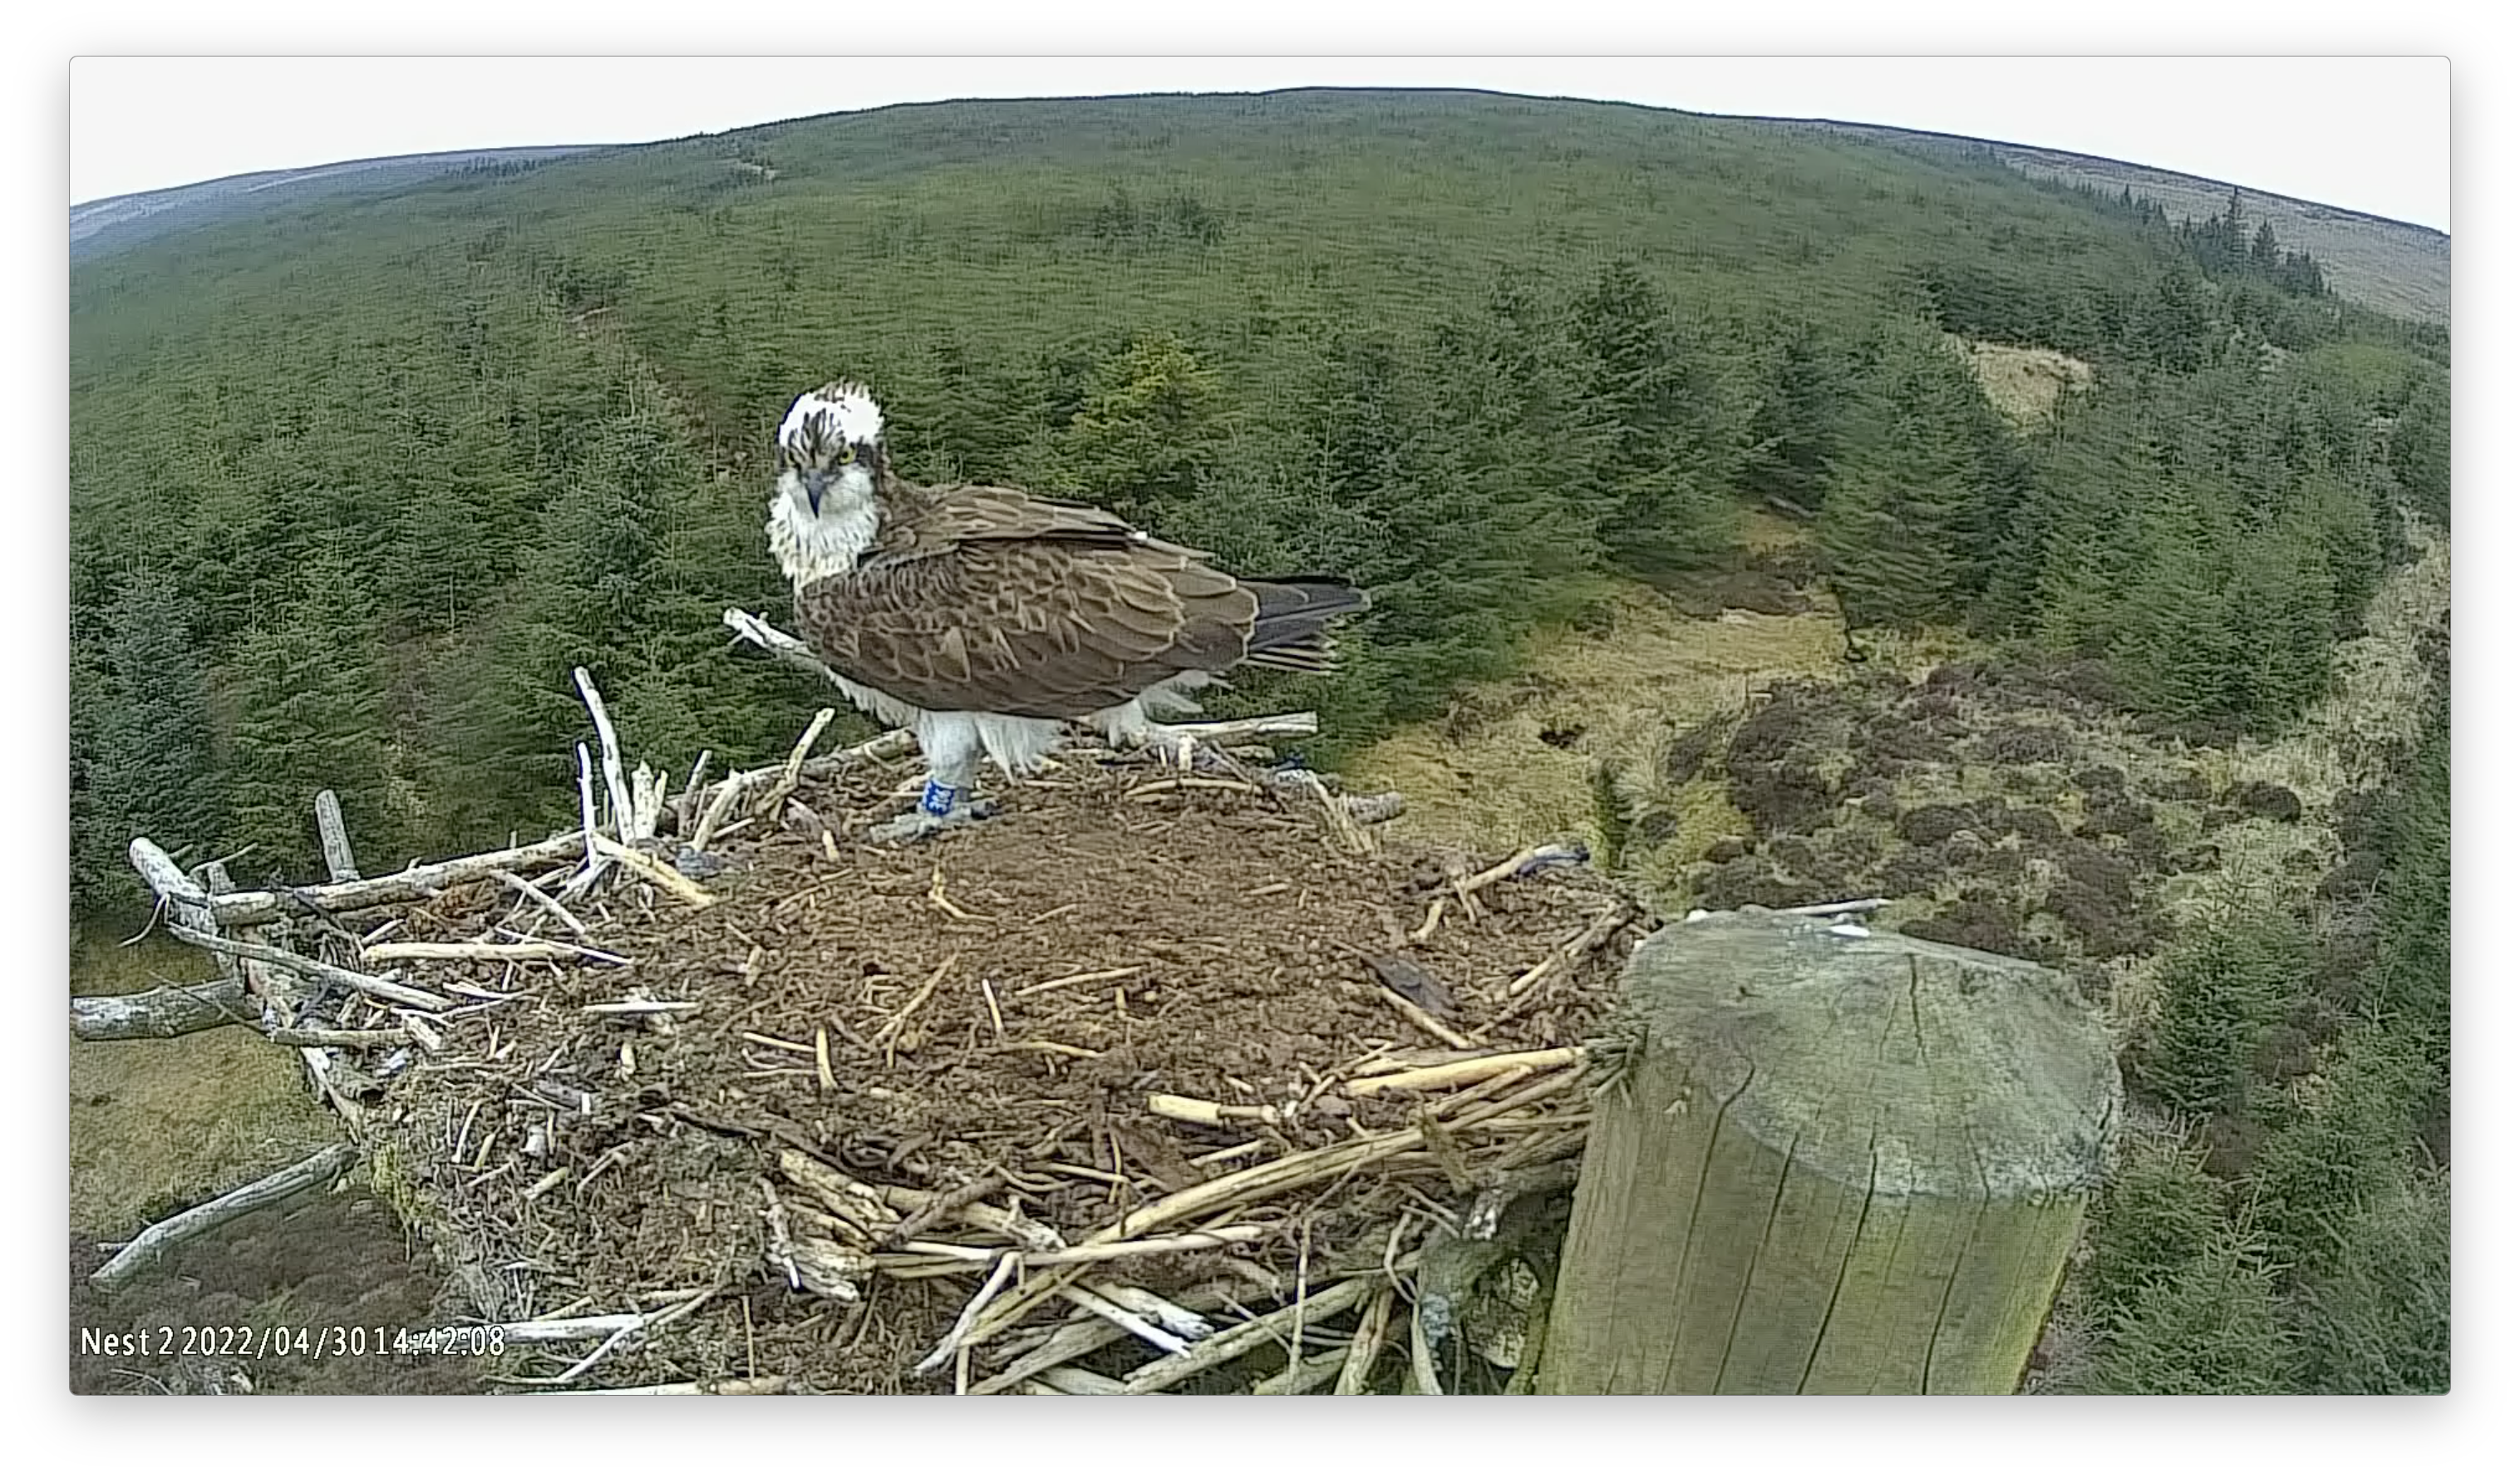 Osprey at Keilder Forest nest